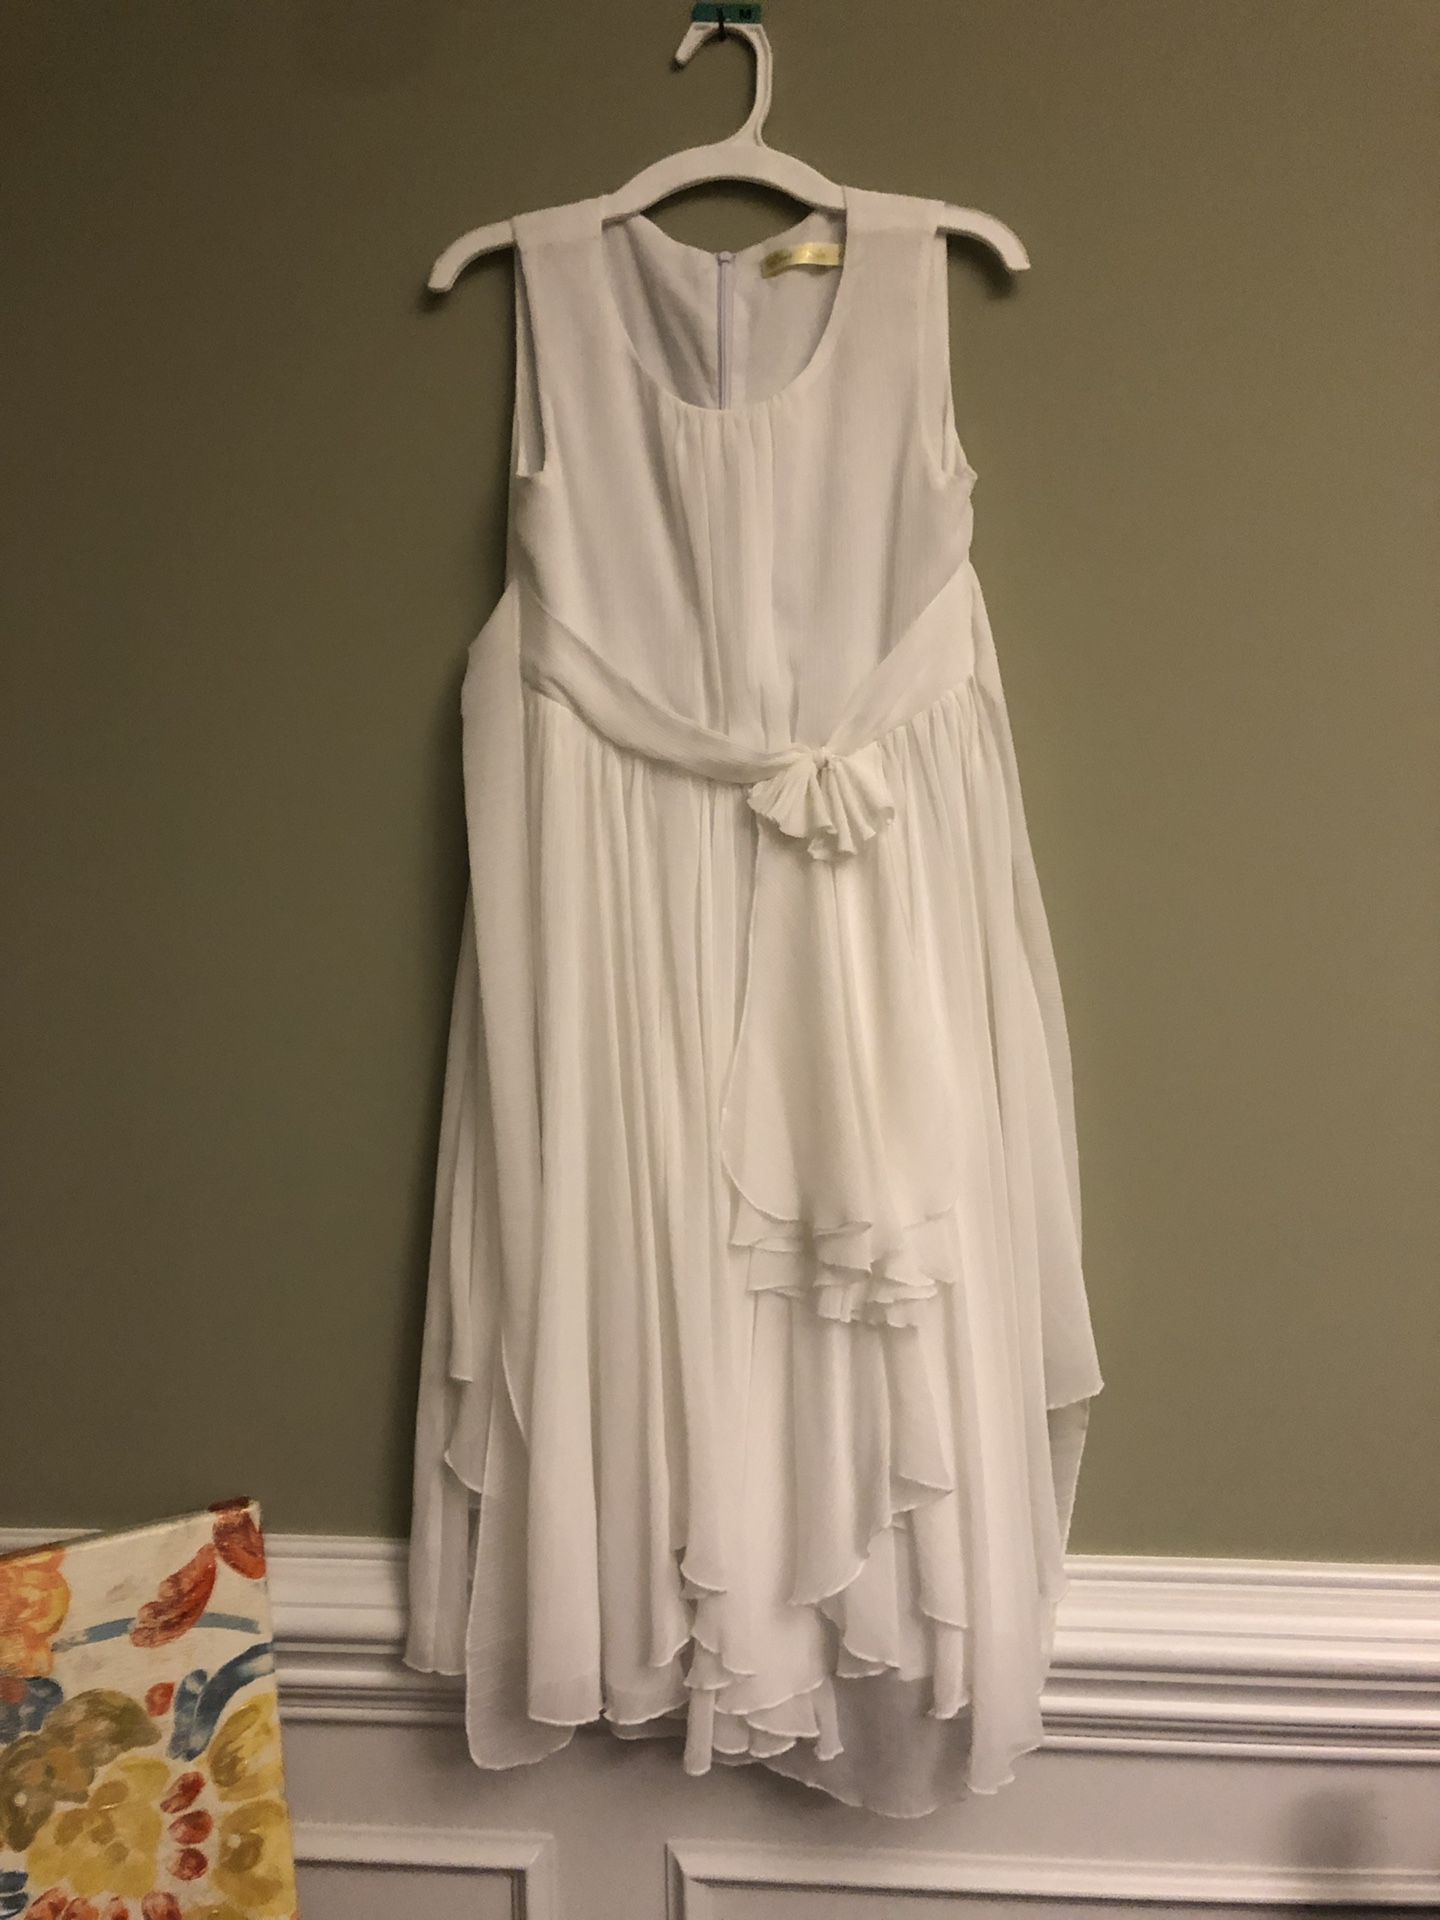 Flower girl/first communion dress